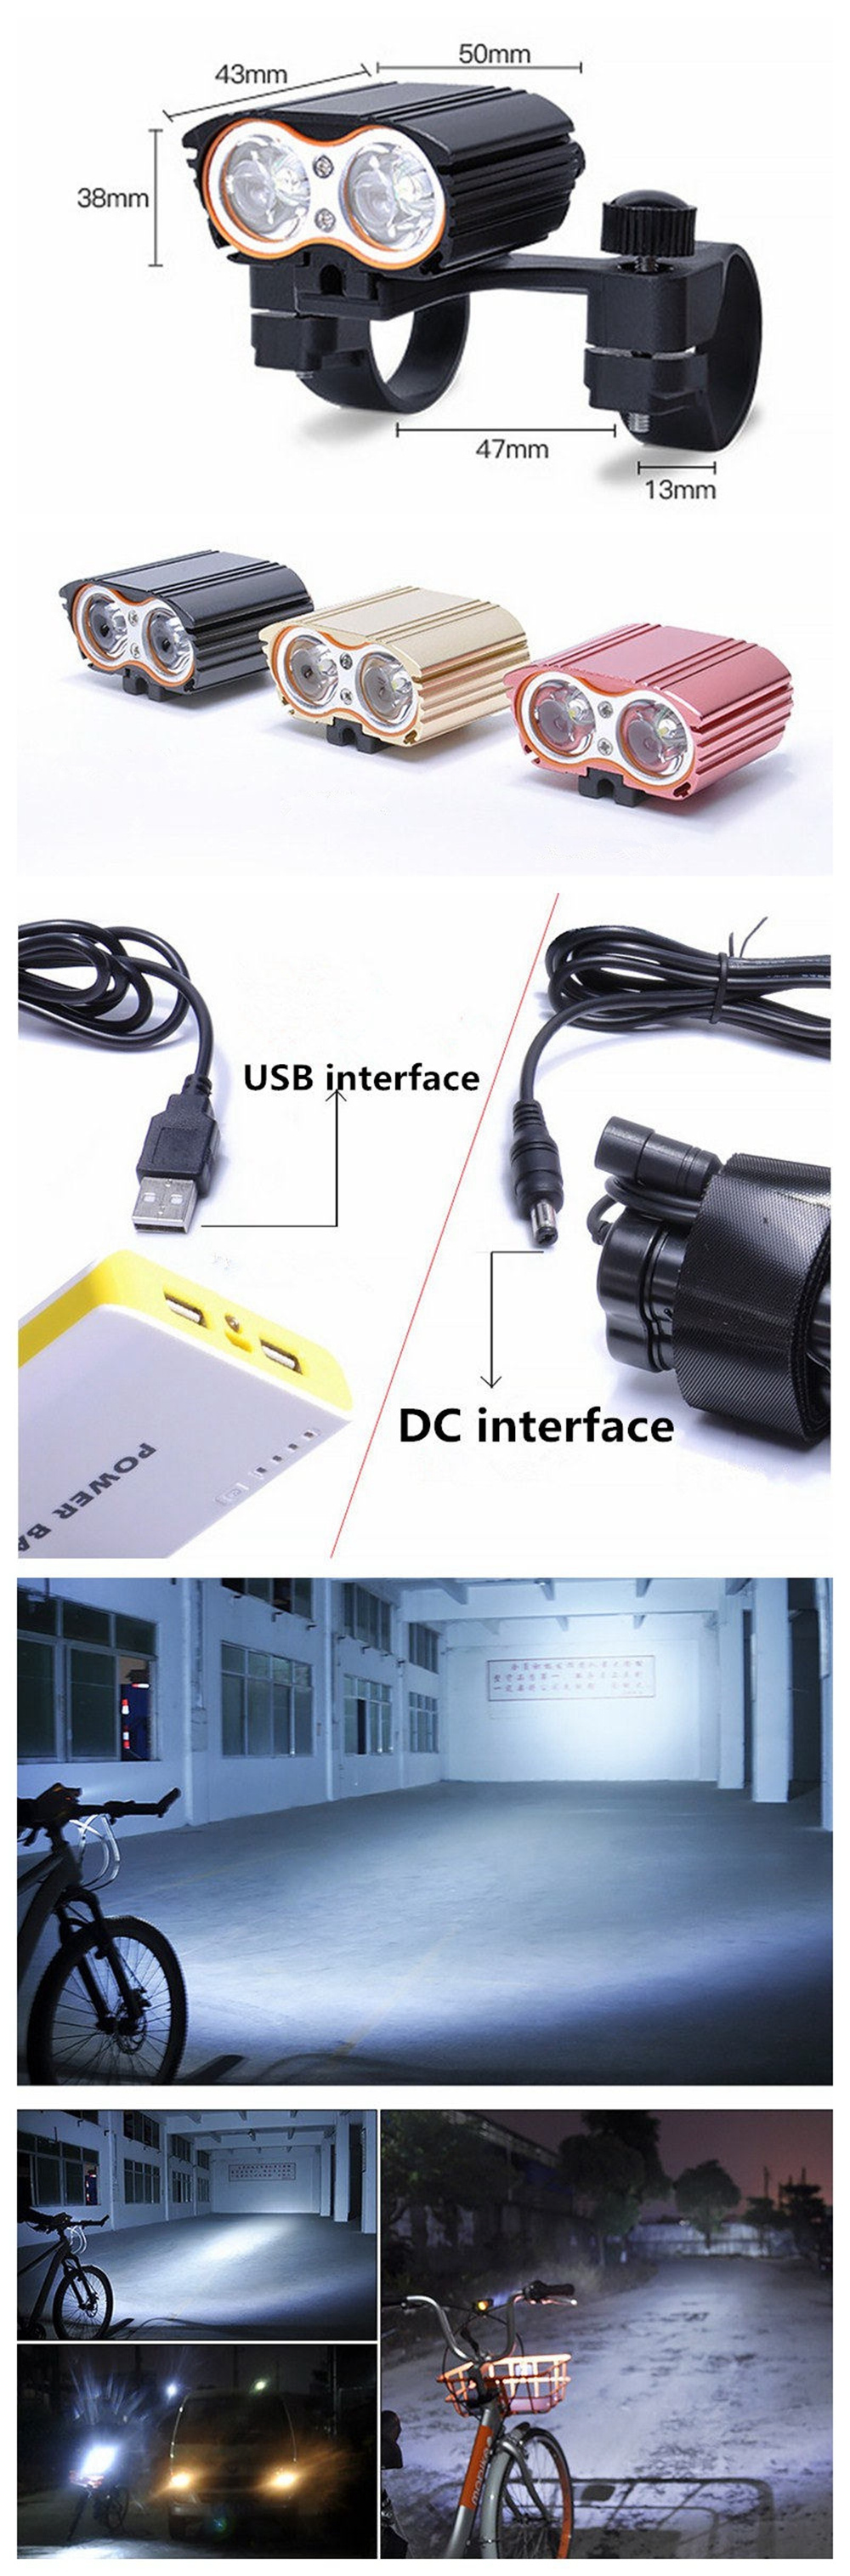 ZHISHUNJIA USB 5V CREE XM-L T6 LED 1400lm 4-Mode Light Bicycle Lamp